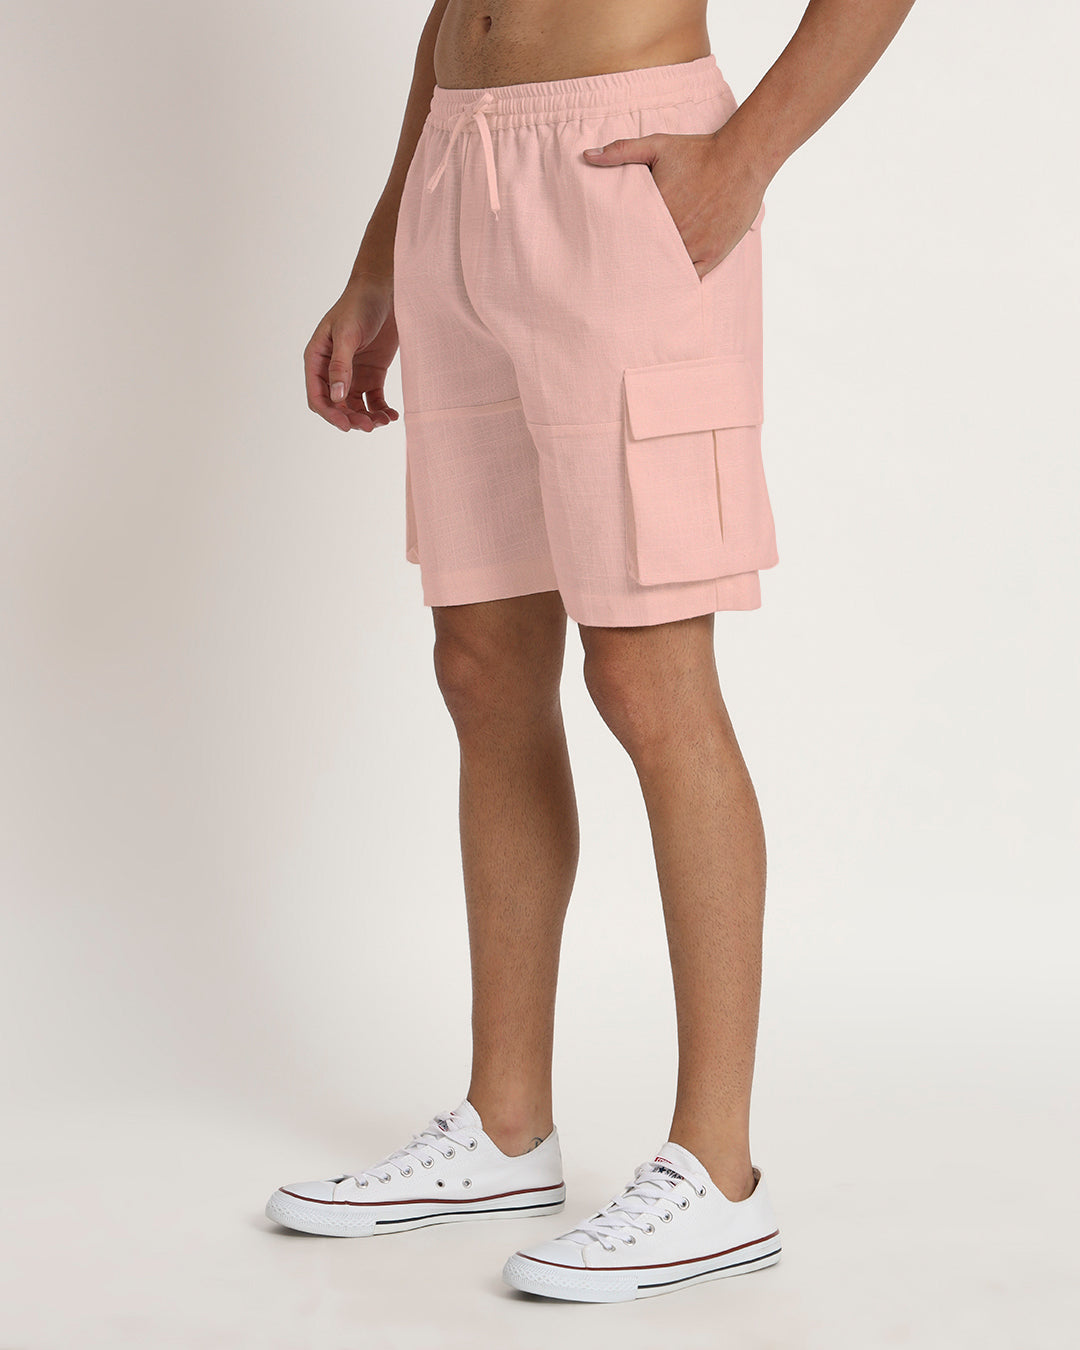 Combo : Slub Comfort Cargo Shorts Black & Fondant Pink Men's Shorts